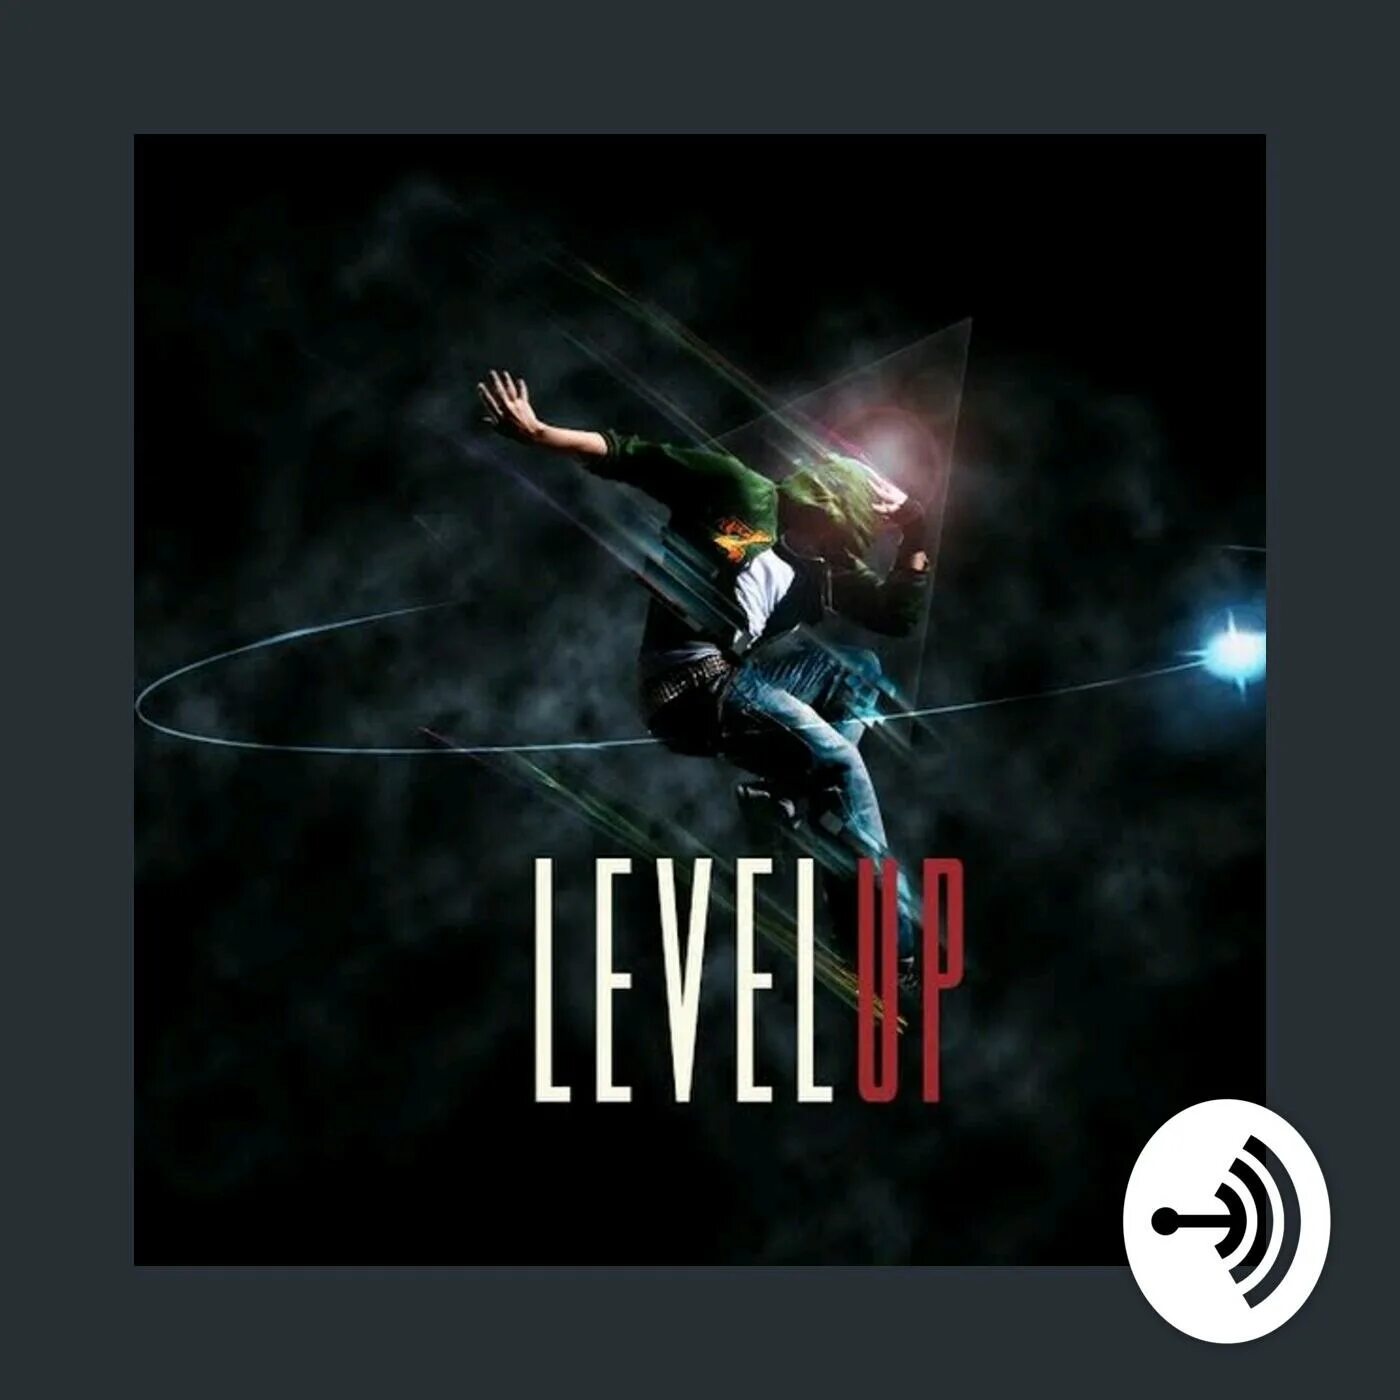 Level up аудиокнига. Lvl up обложка. Левел ап студио. Левел ап обложка песни. Level up музыкант.